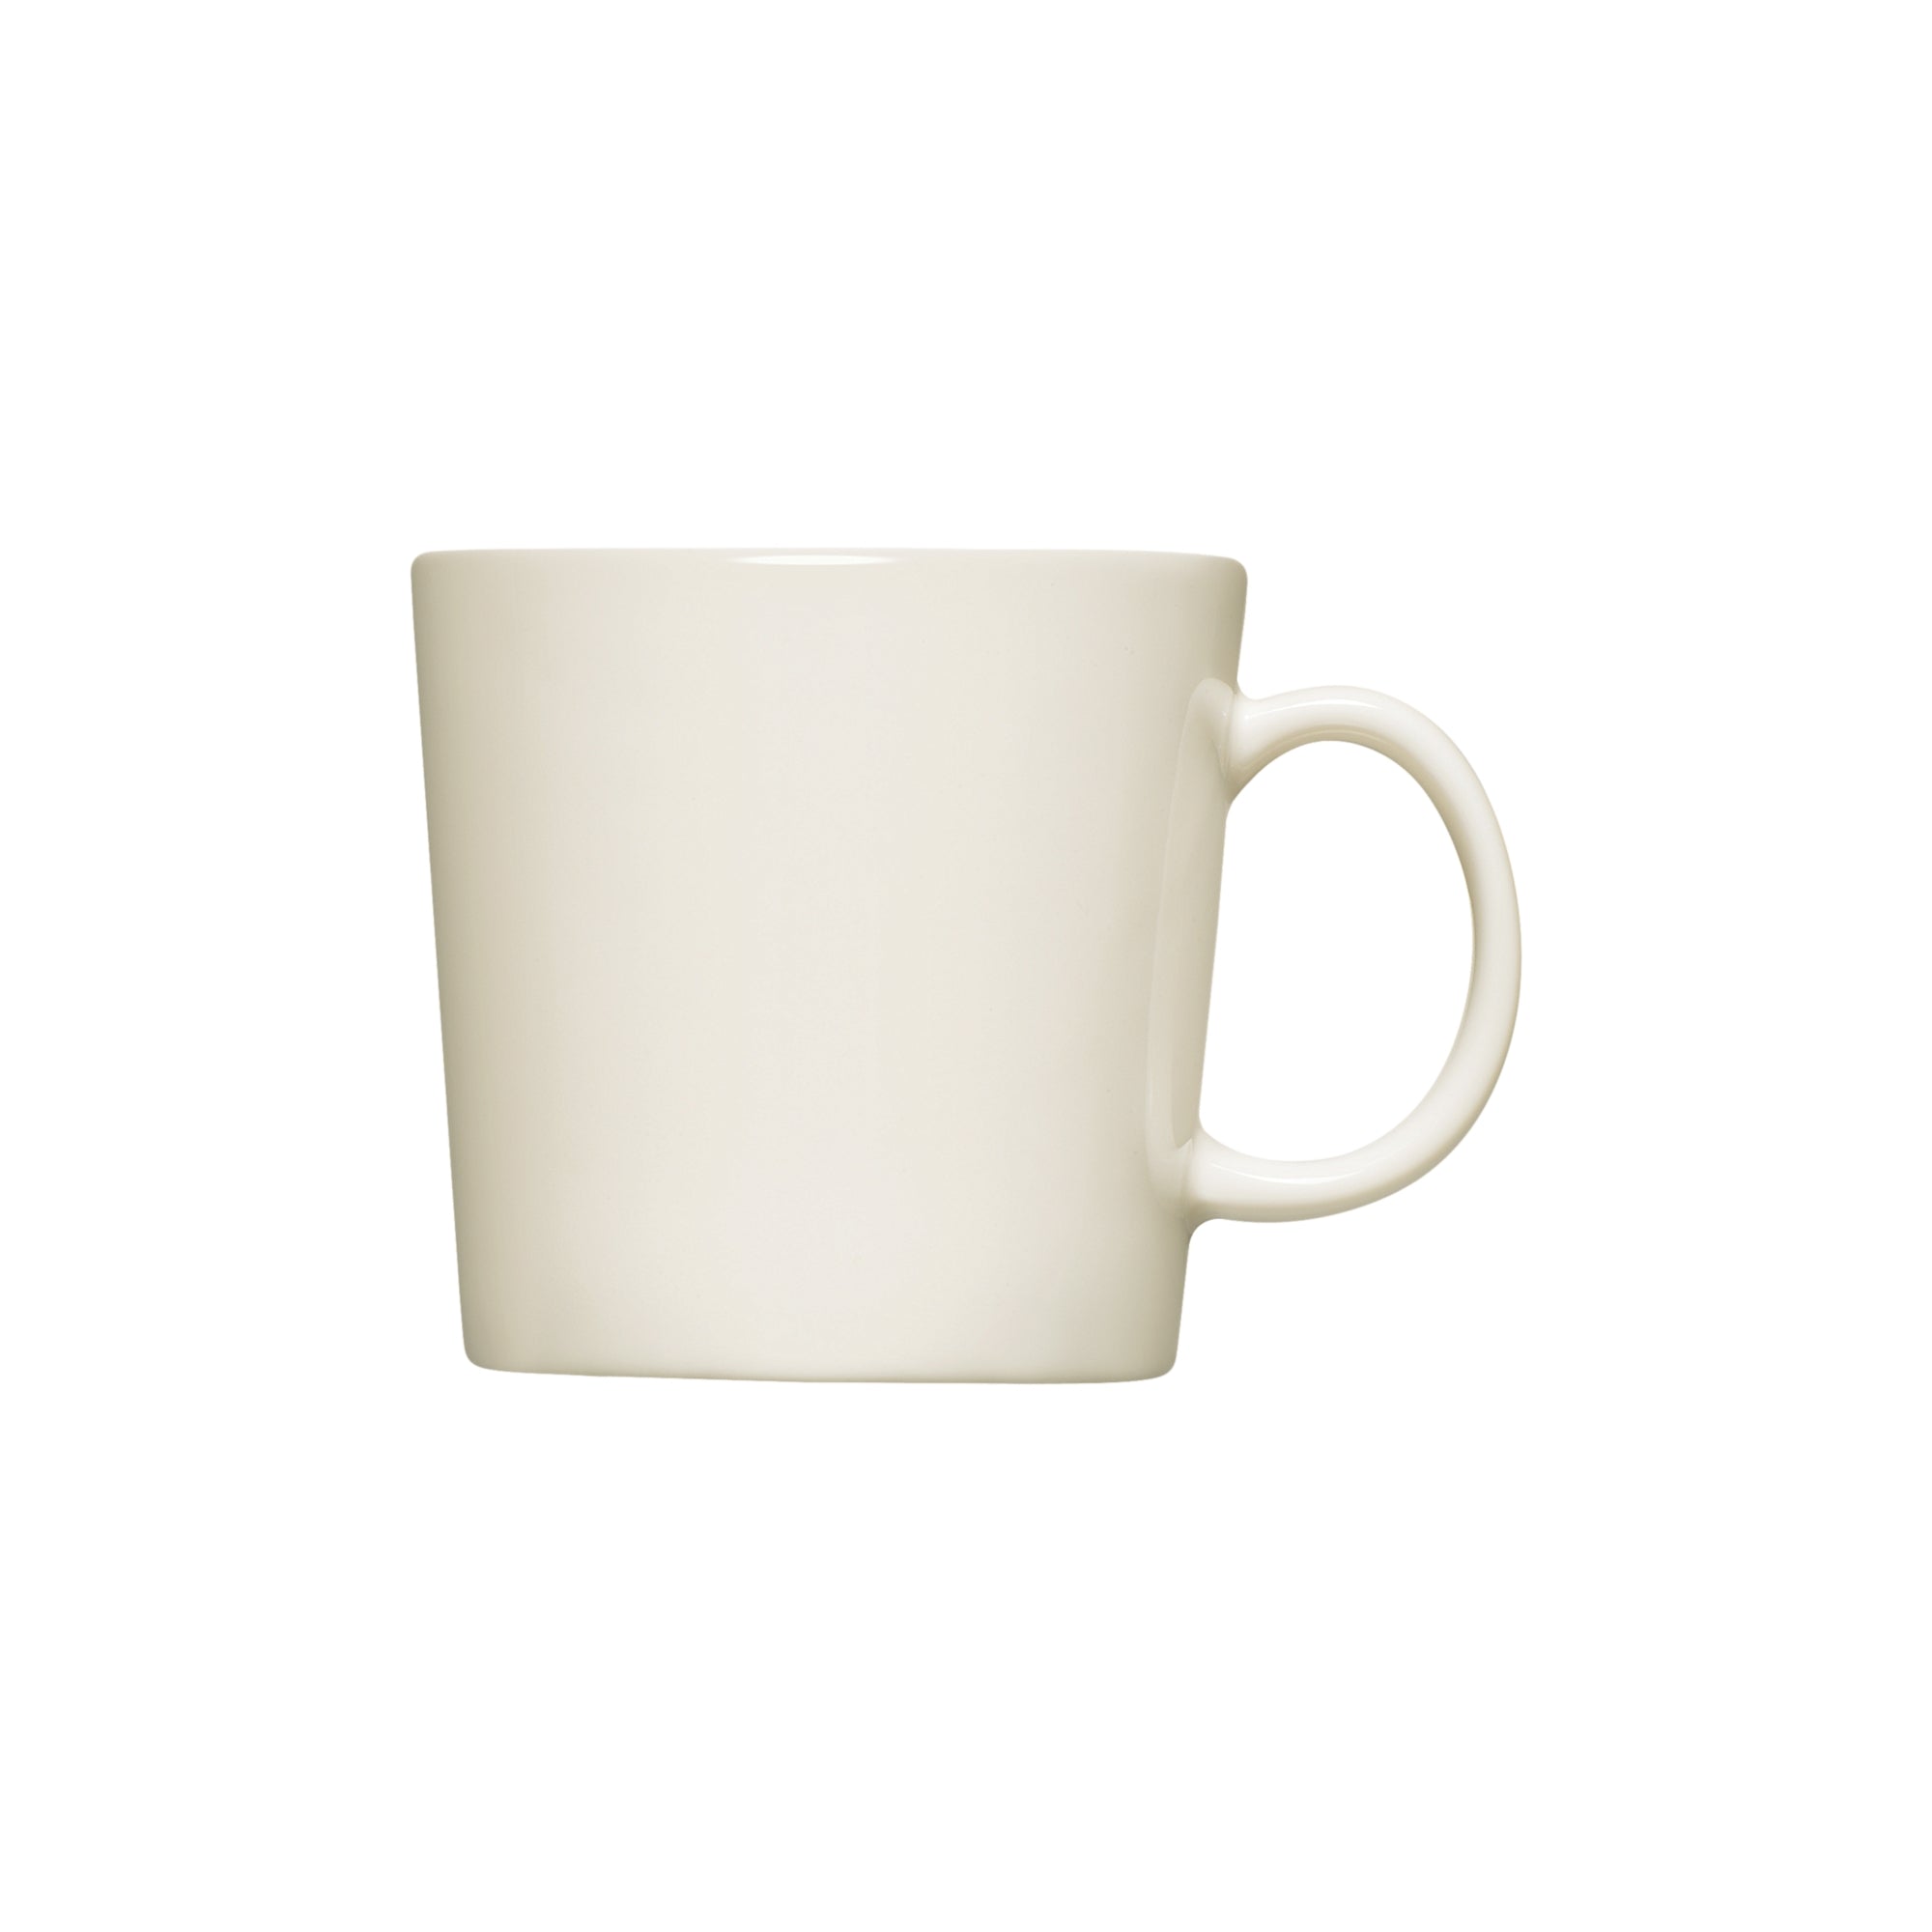 Teema mug 0.3 l small mug 10oz